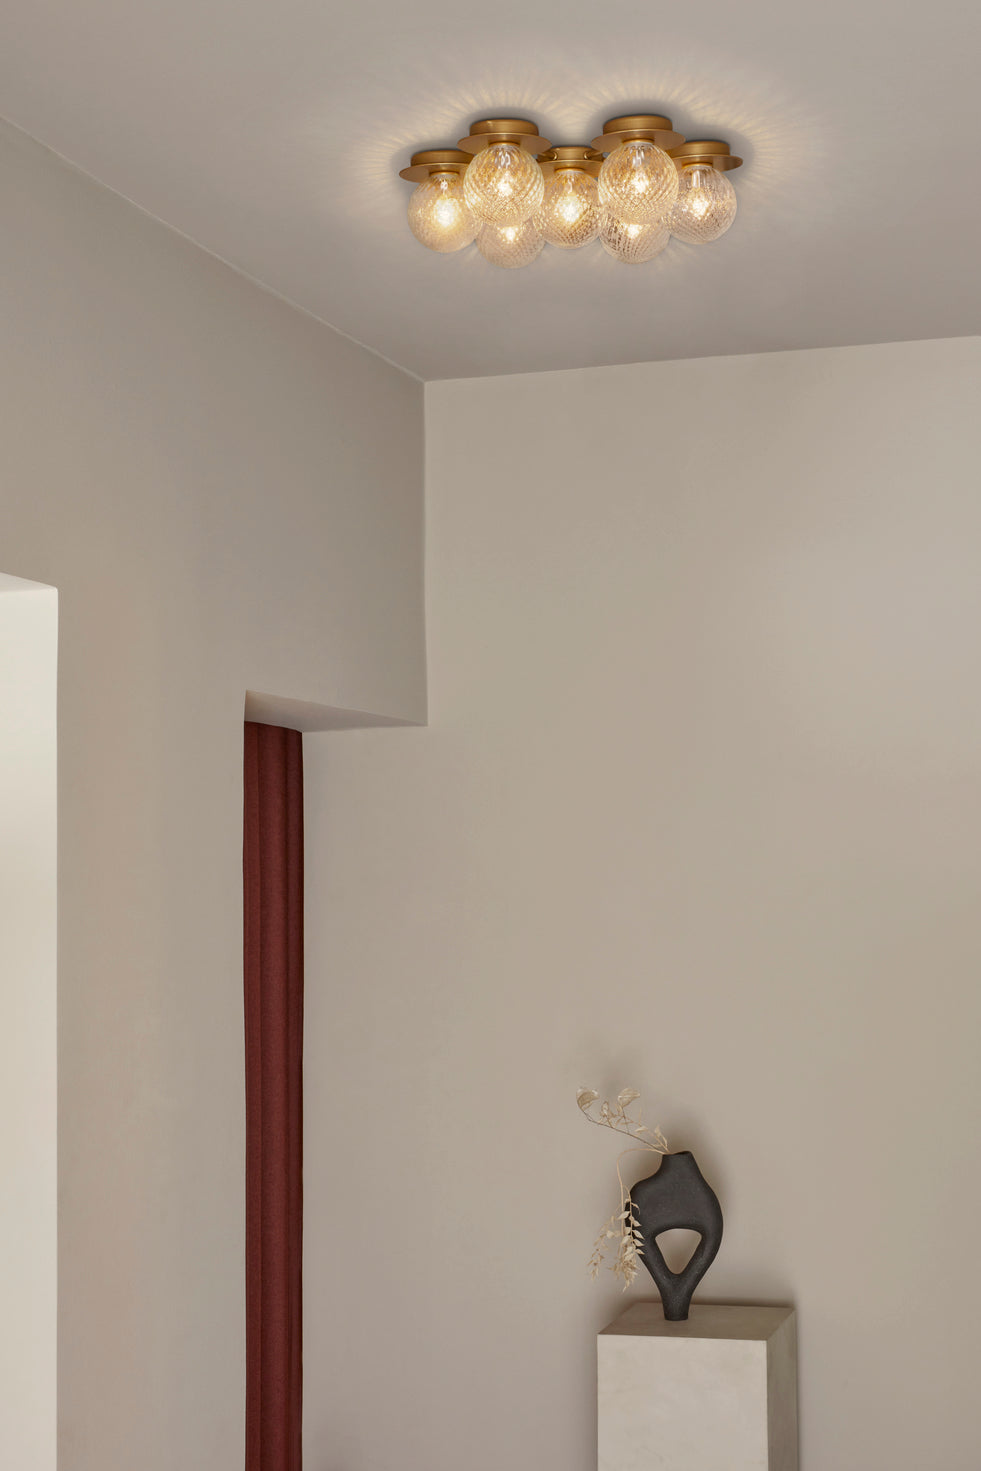 Loftlampe med lampeskærme af klart optikglas og gylden fatning og stel, på hvidt loft